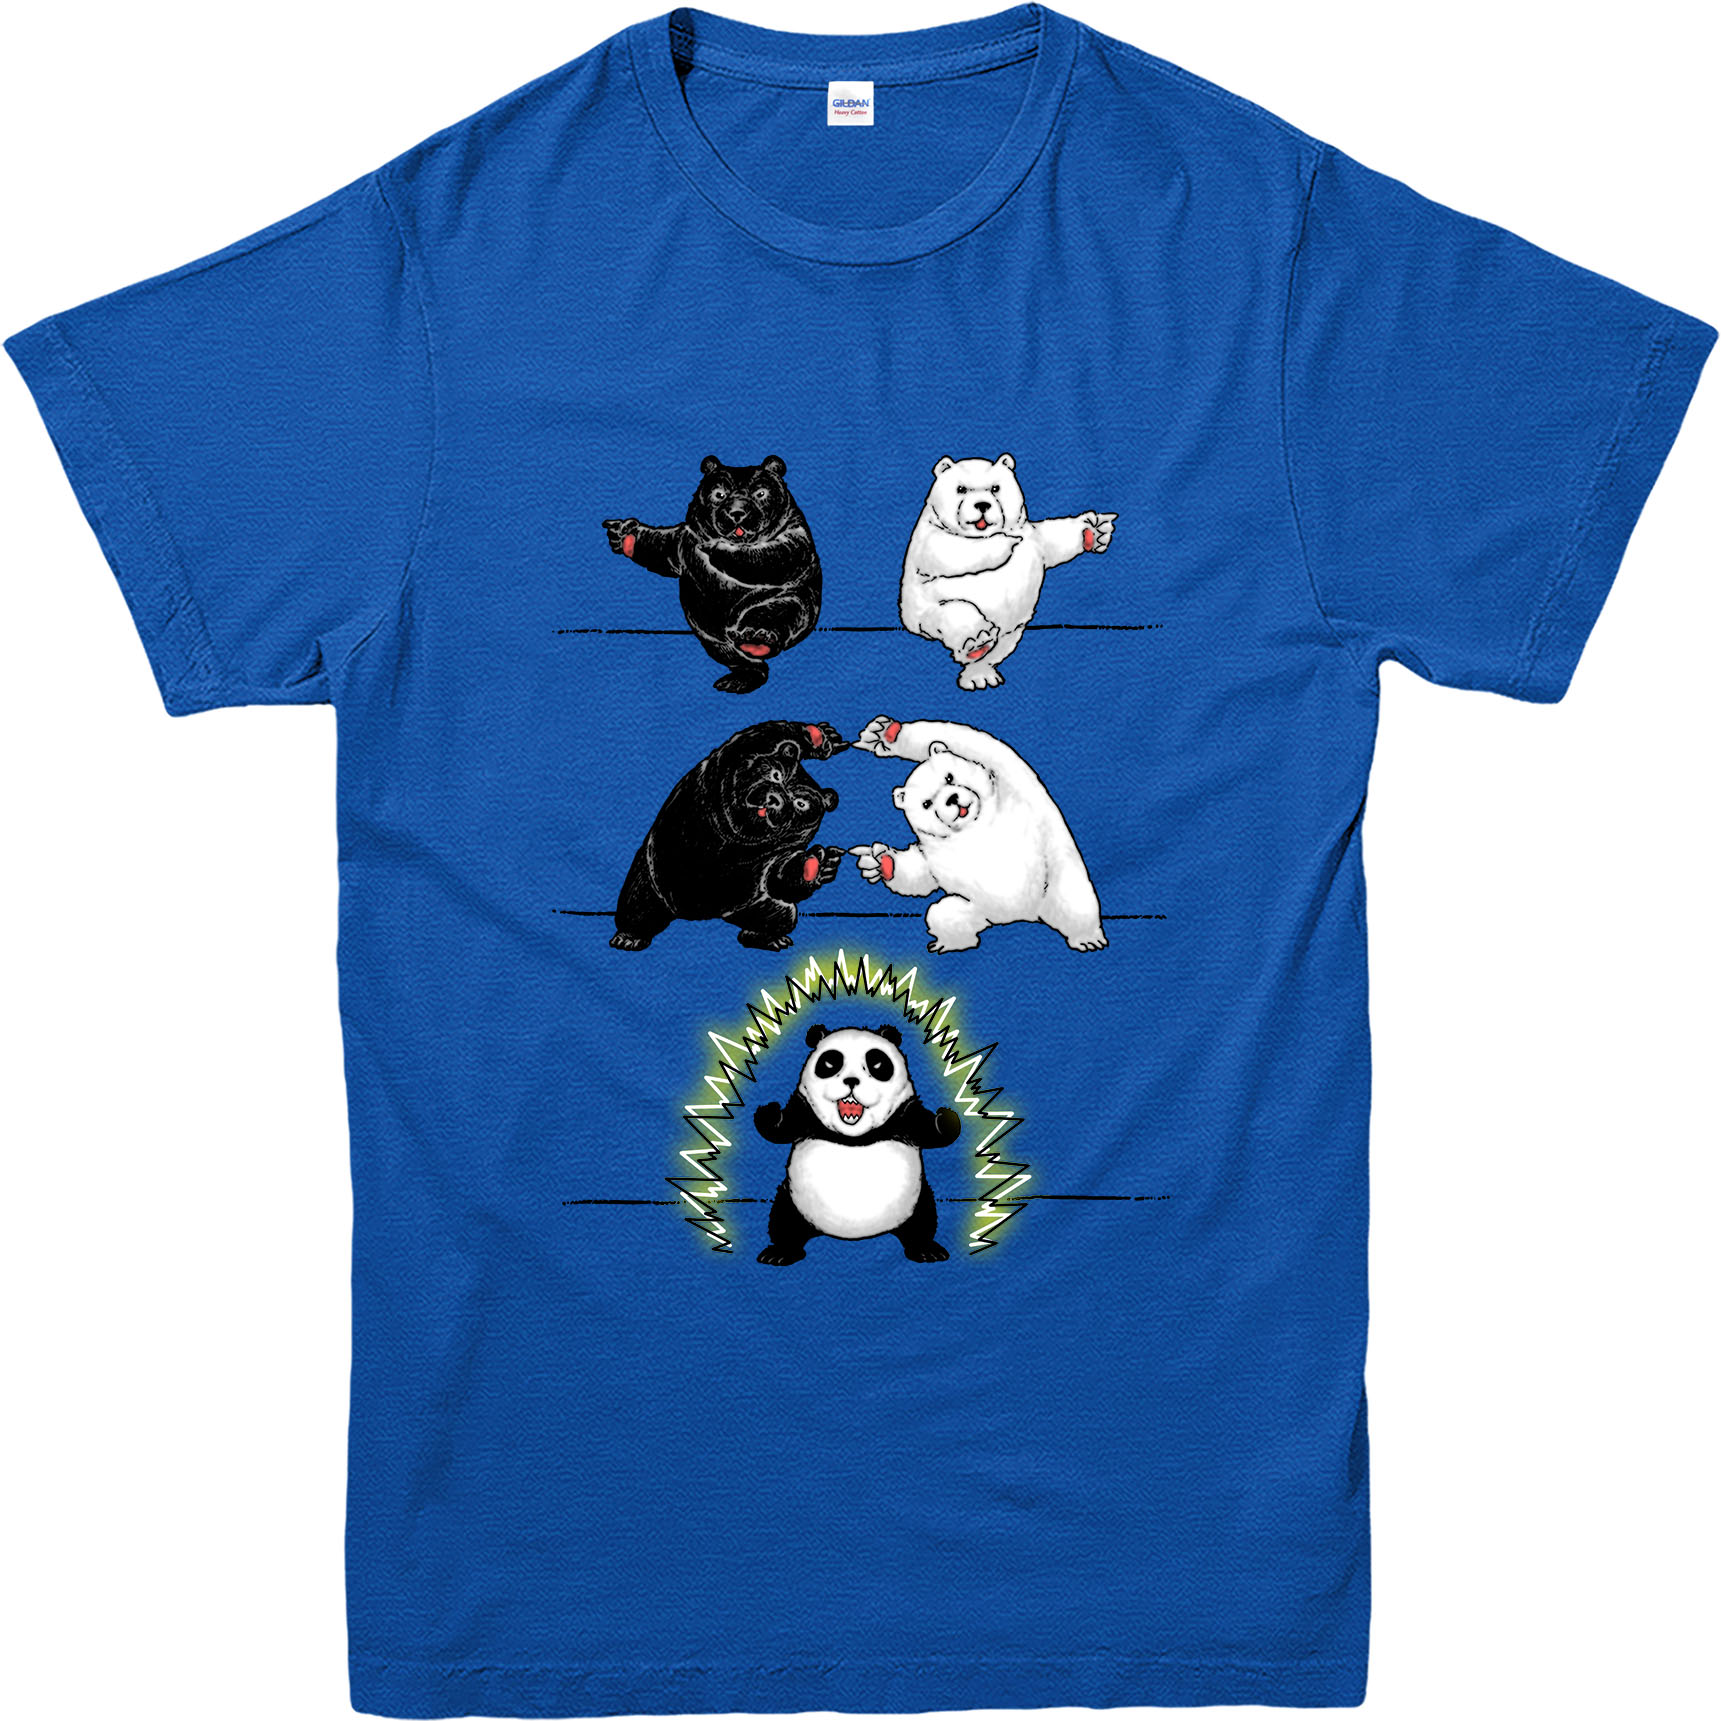 Dragon Ball Z T-Shirt, BEAR FUSION PANDA T-Shirt, Funny Casualwear Top | eBay